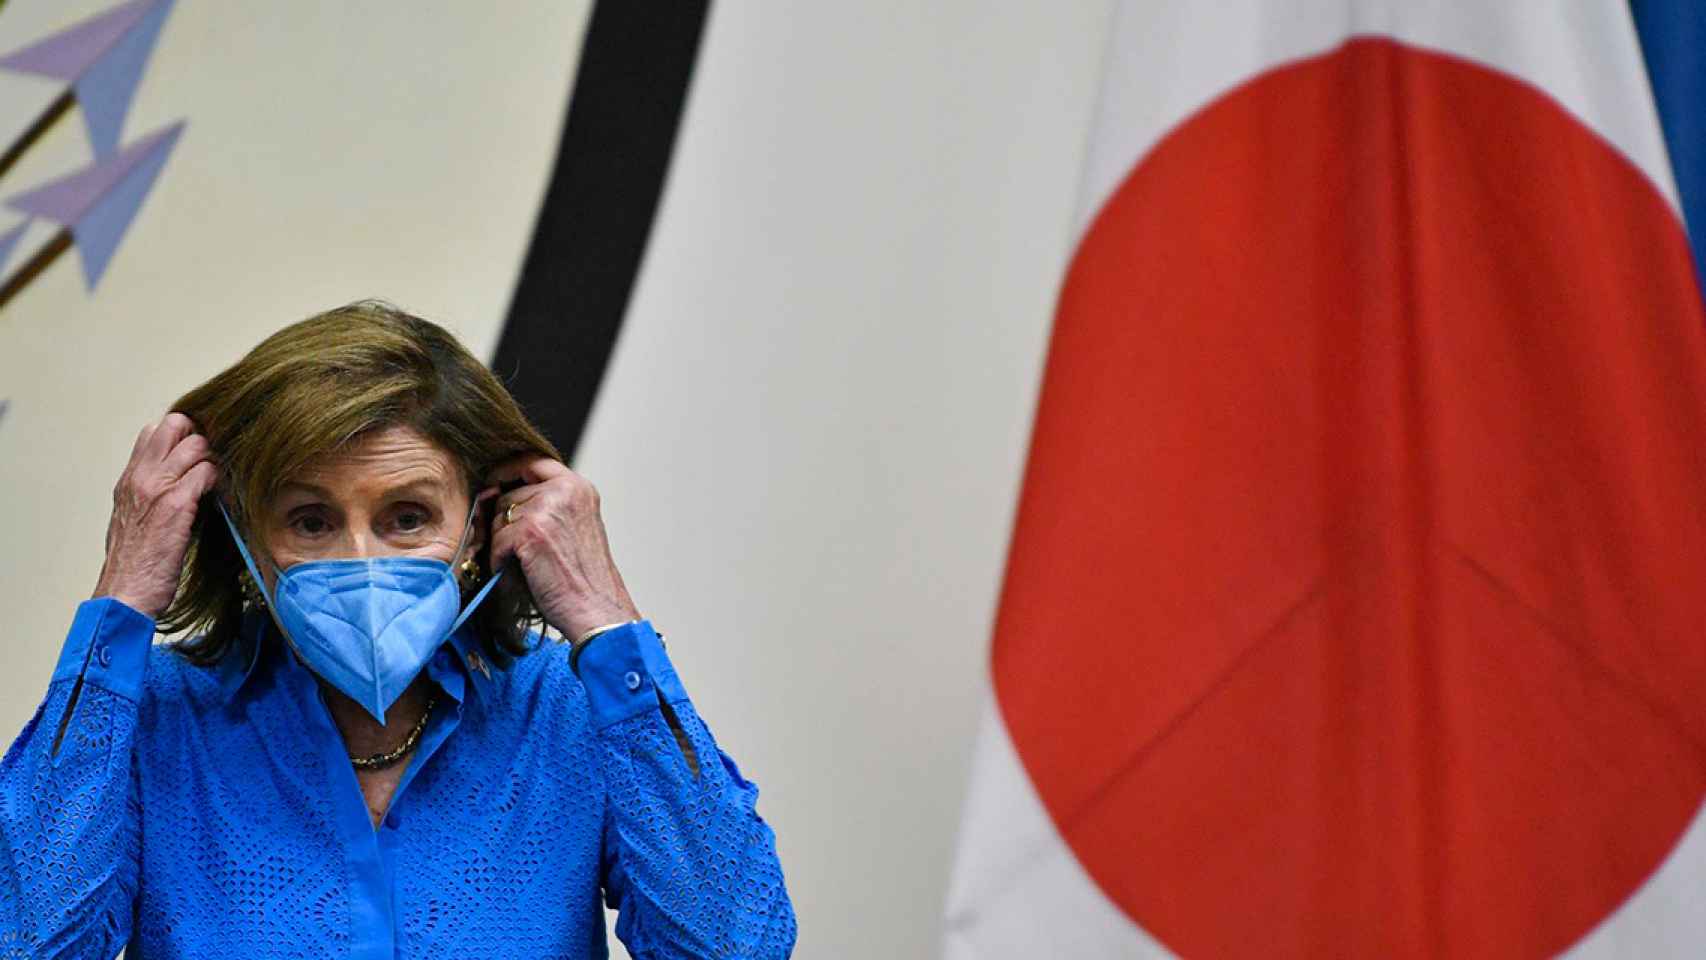 La presidenta de la Cámara de Representantes de Estados Unidos, Nancy Pelosi, se pone la mascarilla durante una rueda de prensa en la Embajada de EE.UU. en Tokio (Japón), este viernes / EFE - Franck Robichon